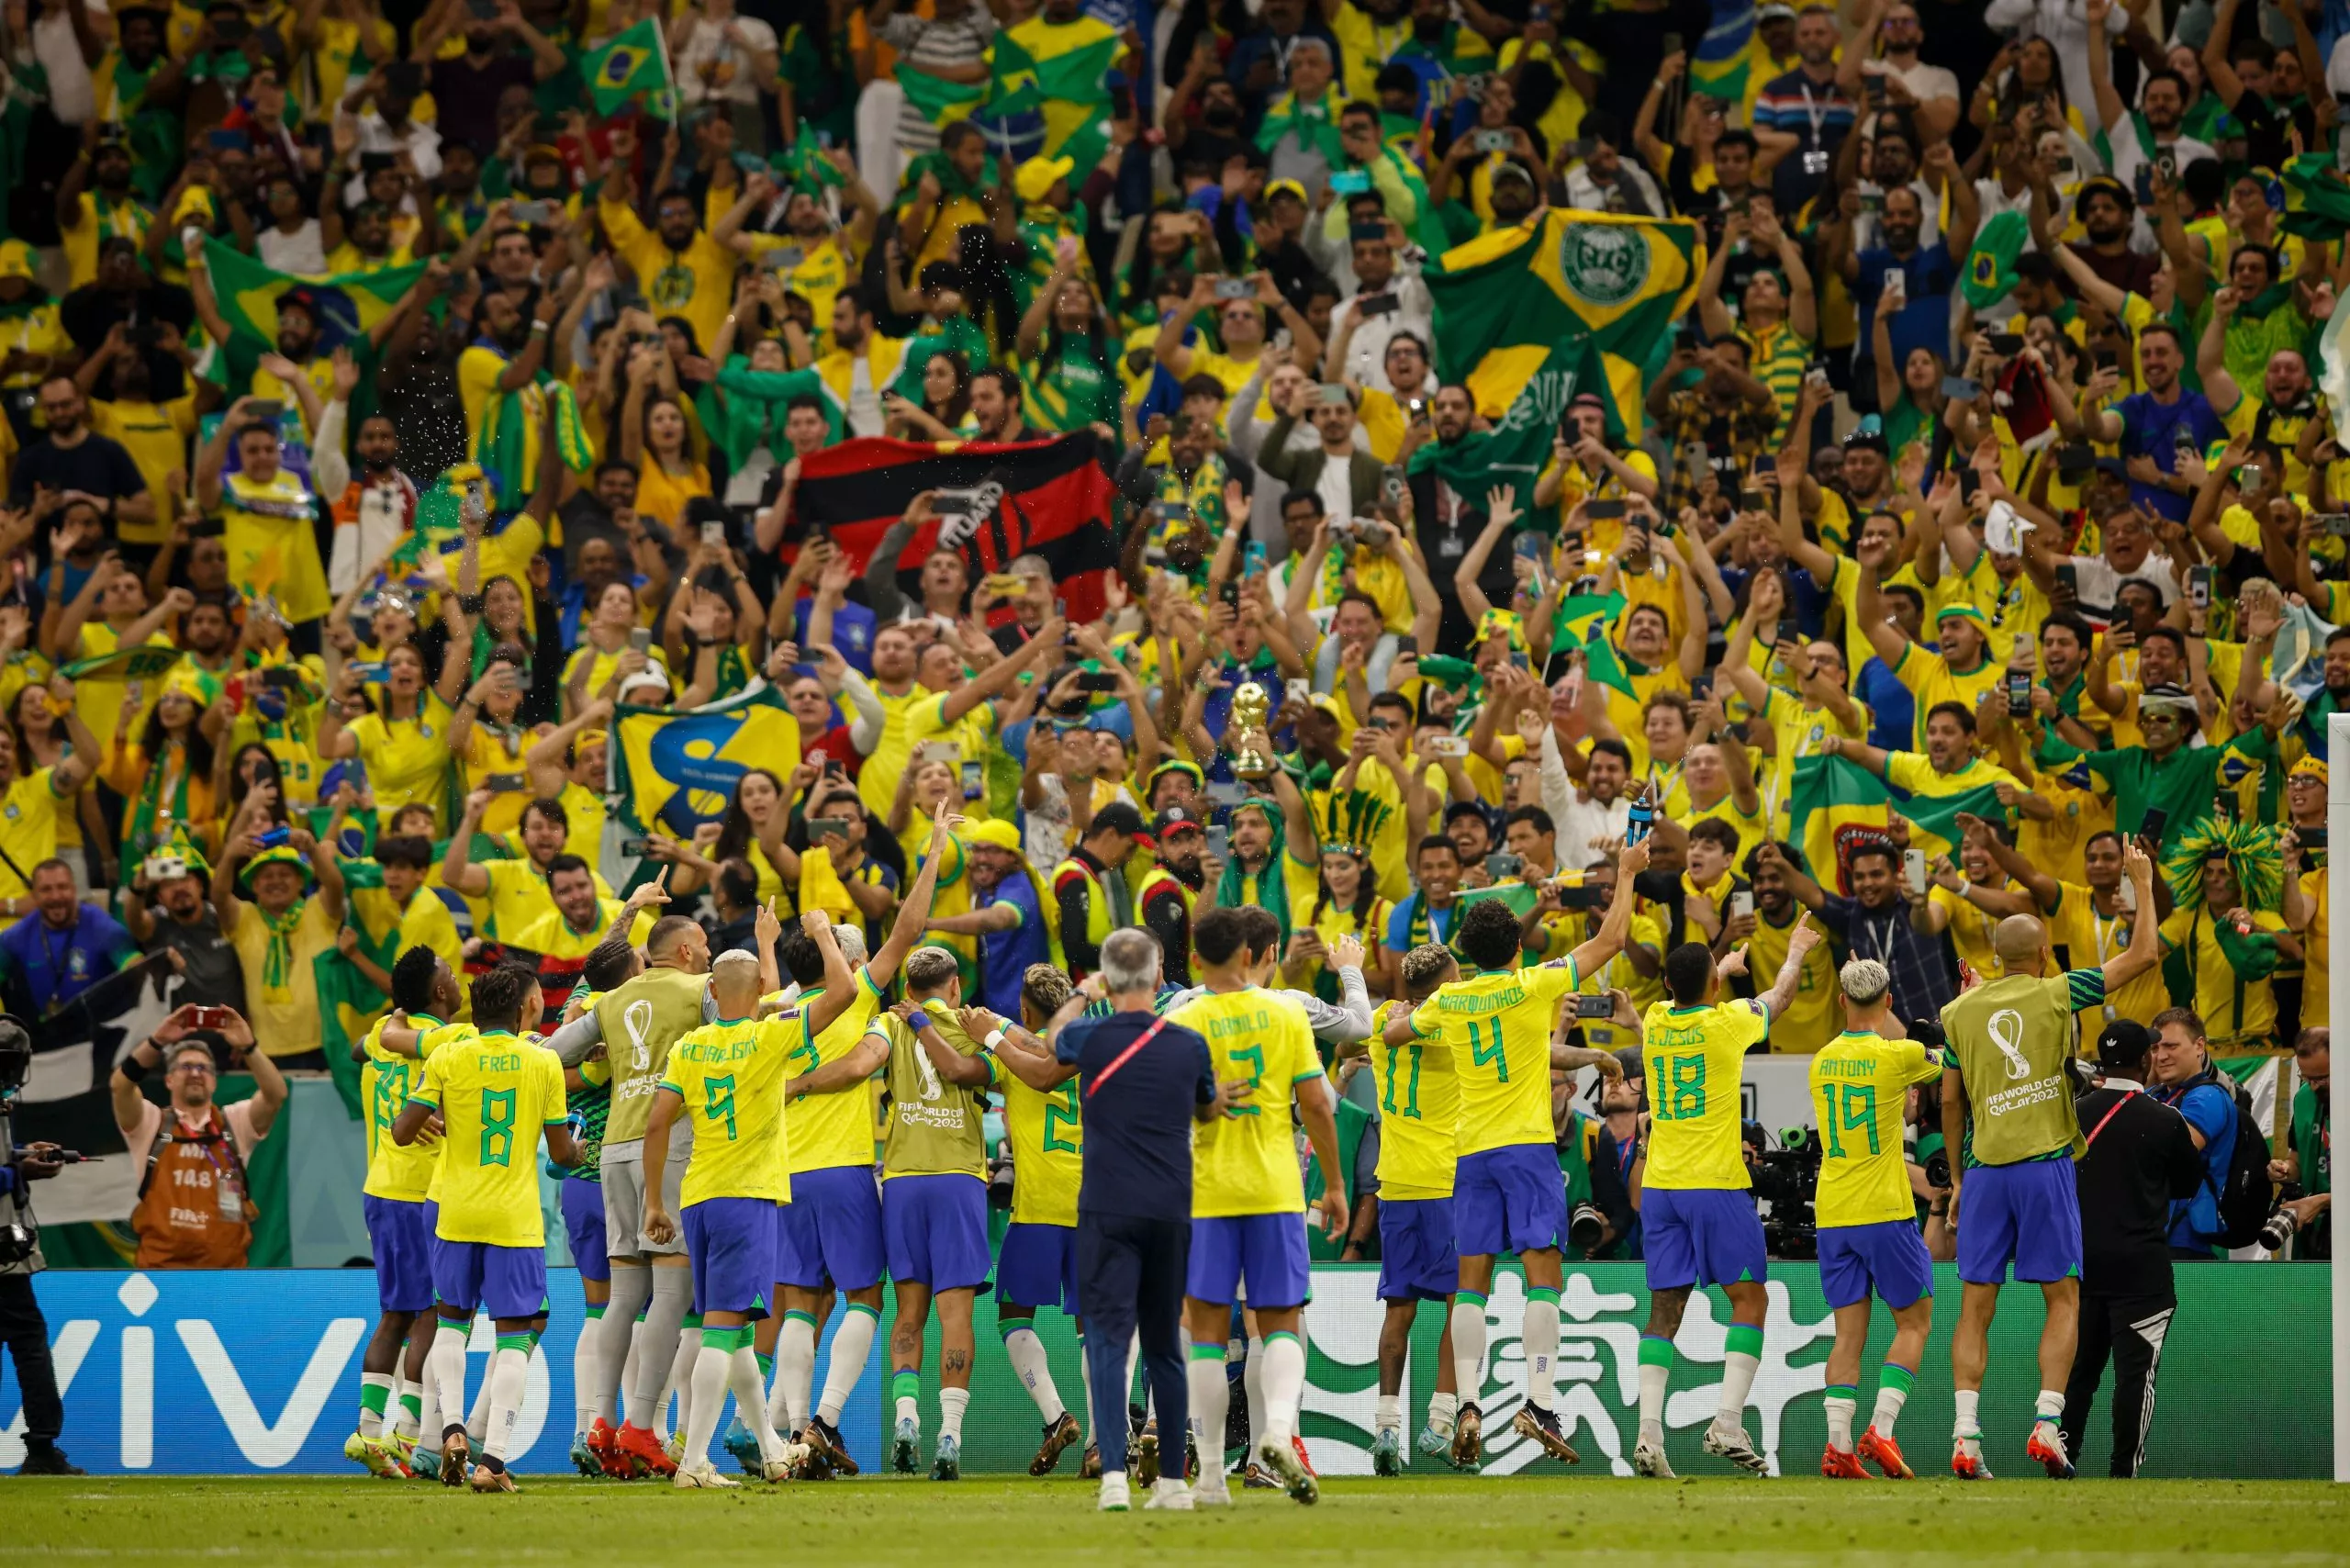 Sikrer Brasil avansementet i VM mot Sveits?